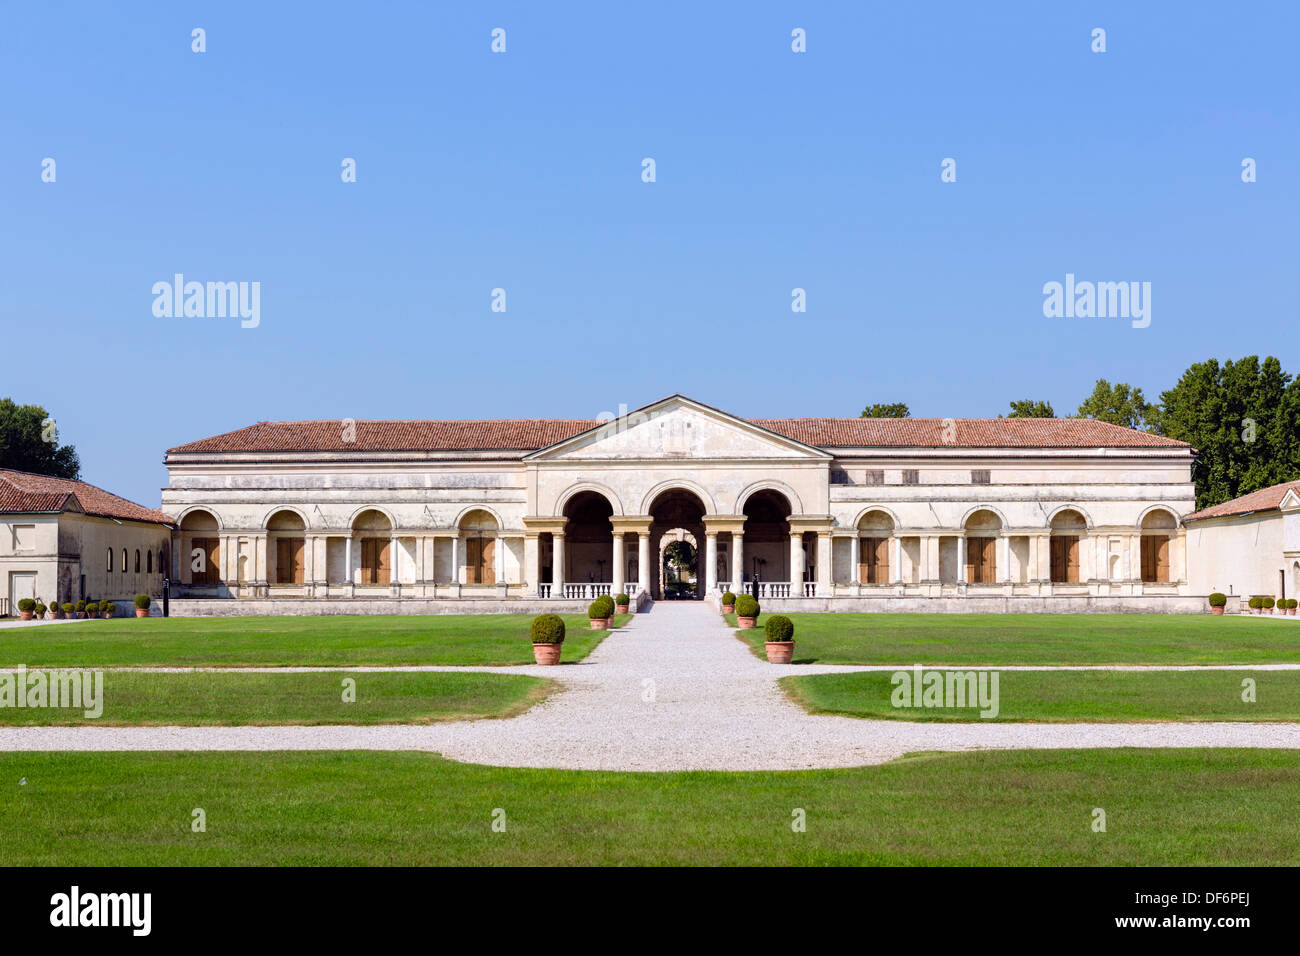 The Palazzo Te, Mantua, Lombardy, Italy Stock Photo